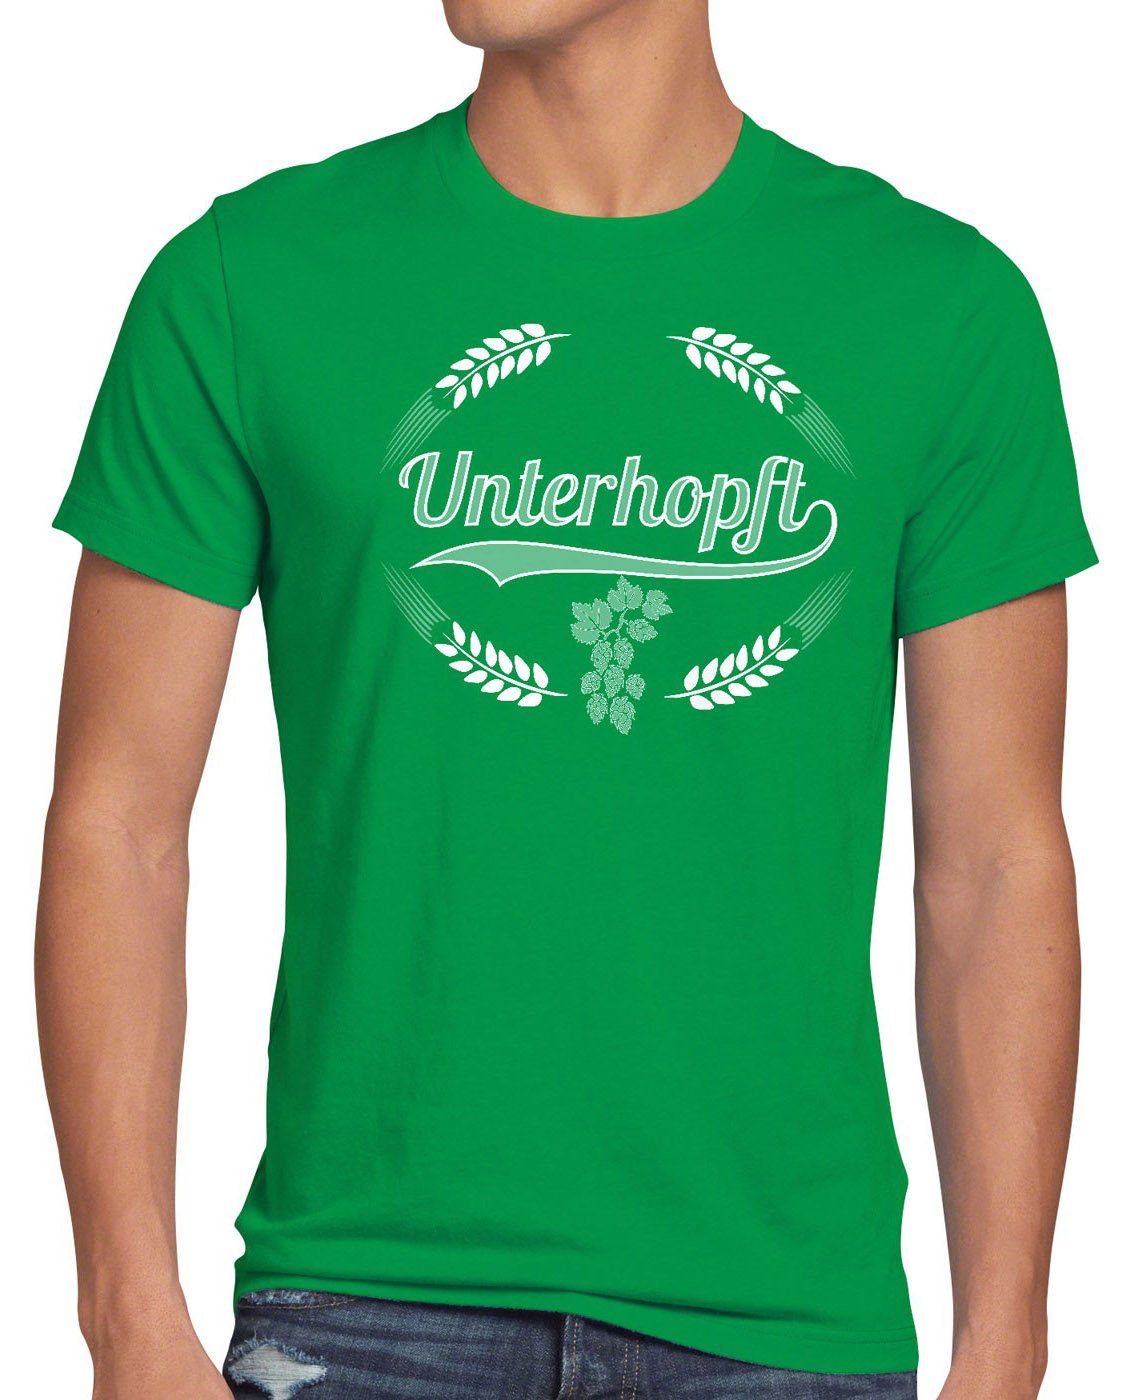 Funshirt Malz Kult Fun style3 Fest Unterhopft Spruch Herren Bier Print-Shirt Hopfen grün Shirt T-Shirt